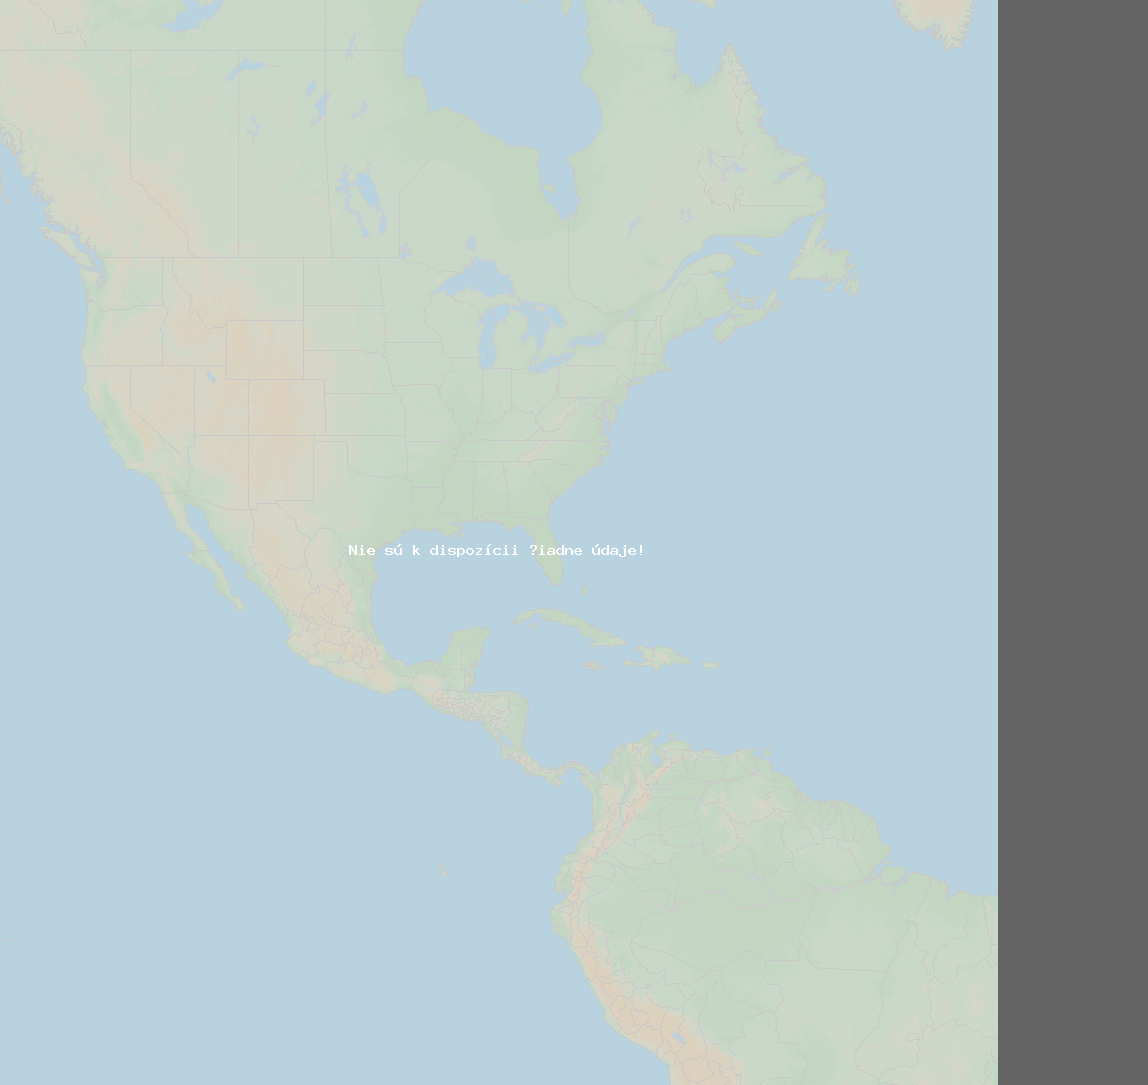 Pomer bleskov (Stanica Owatonna) North America 2024 Január